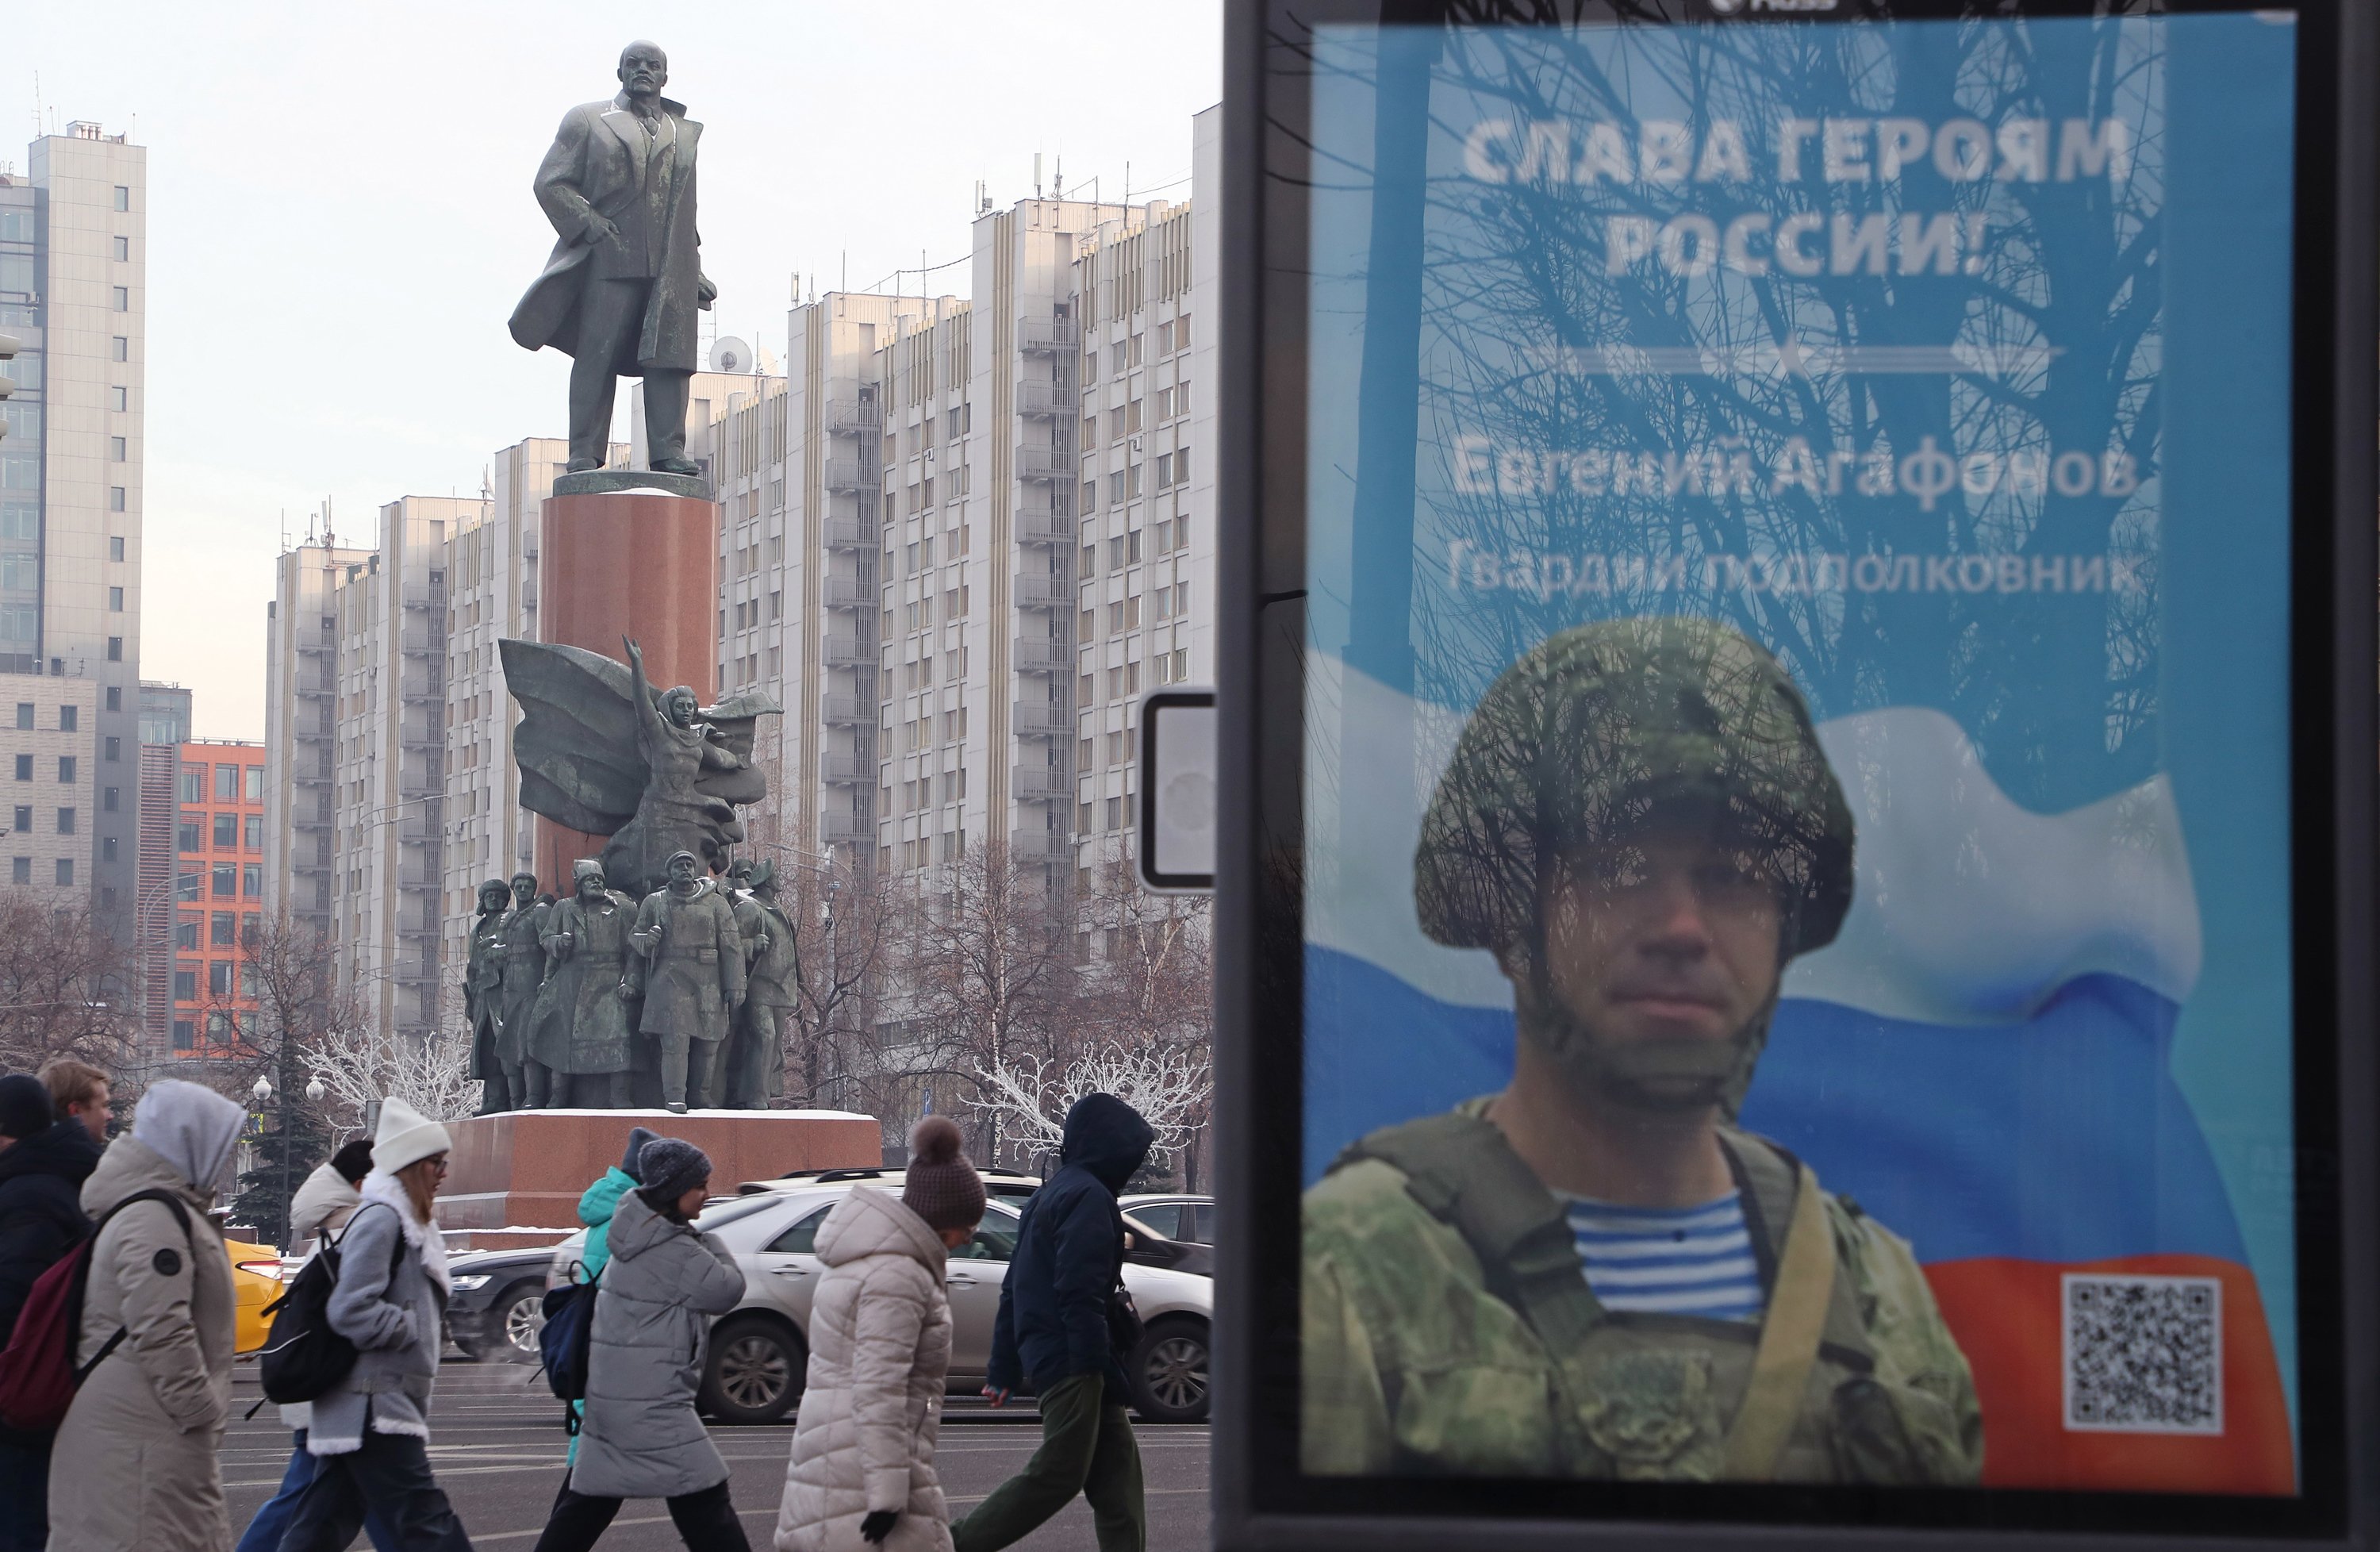 Disminuye el apoyo a la guerra de Ucrania entre los rusos, según la inteligencia británica